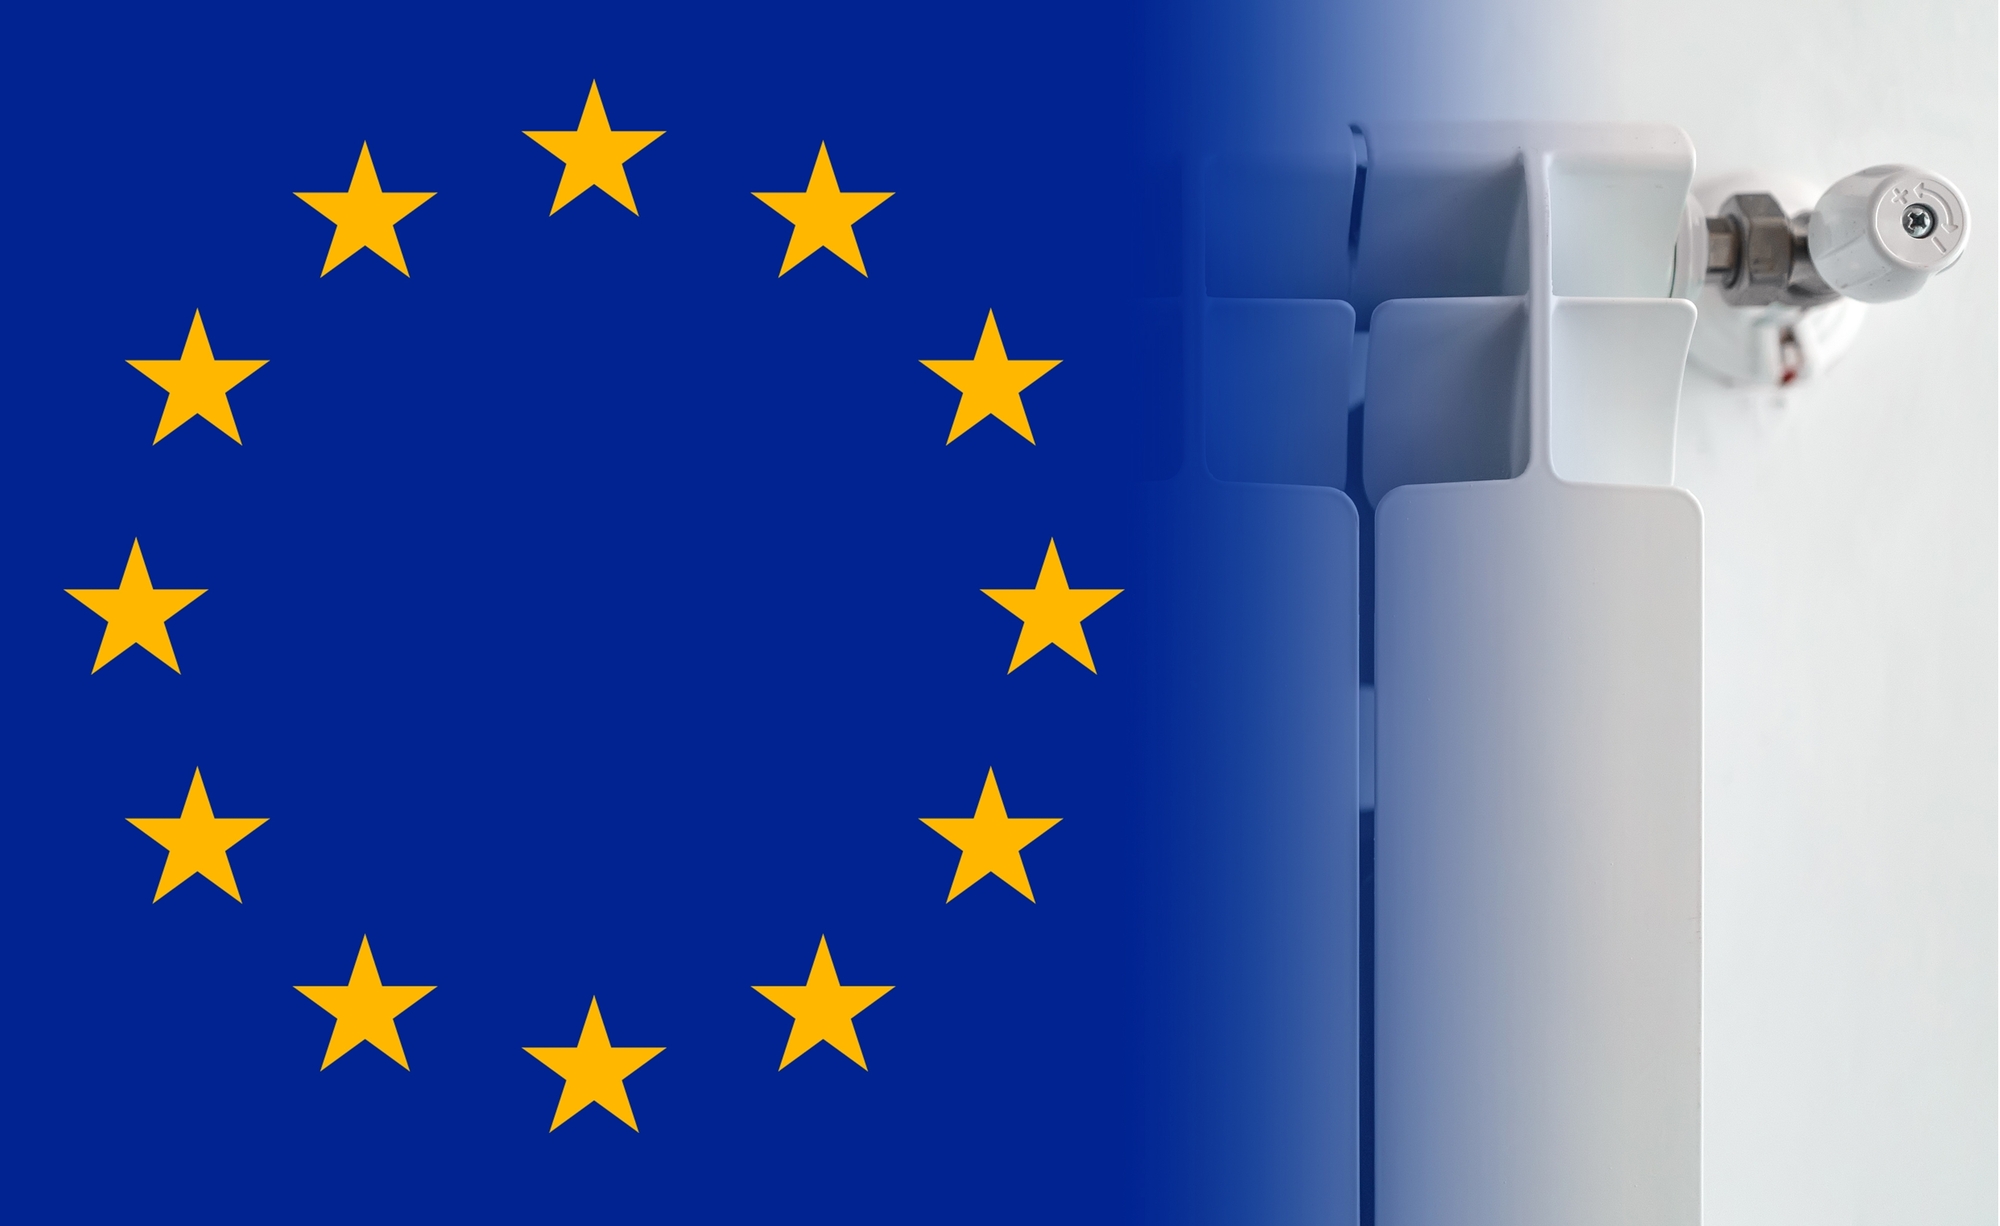 L'Union européenne veut encore plus fortement augmenter les économies d'énergie, mais comment ?